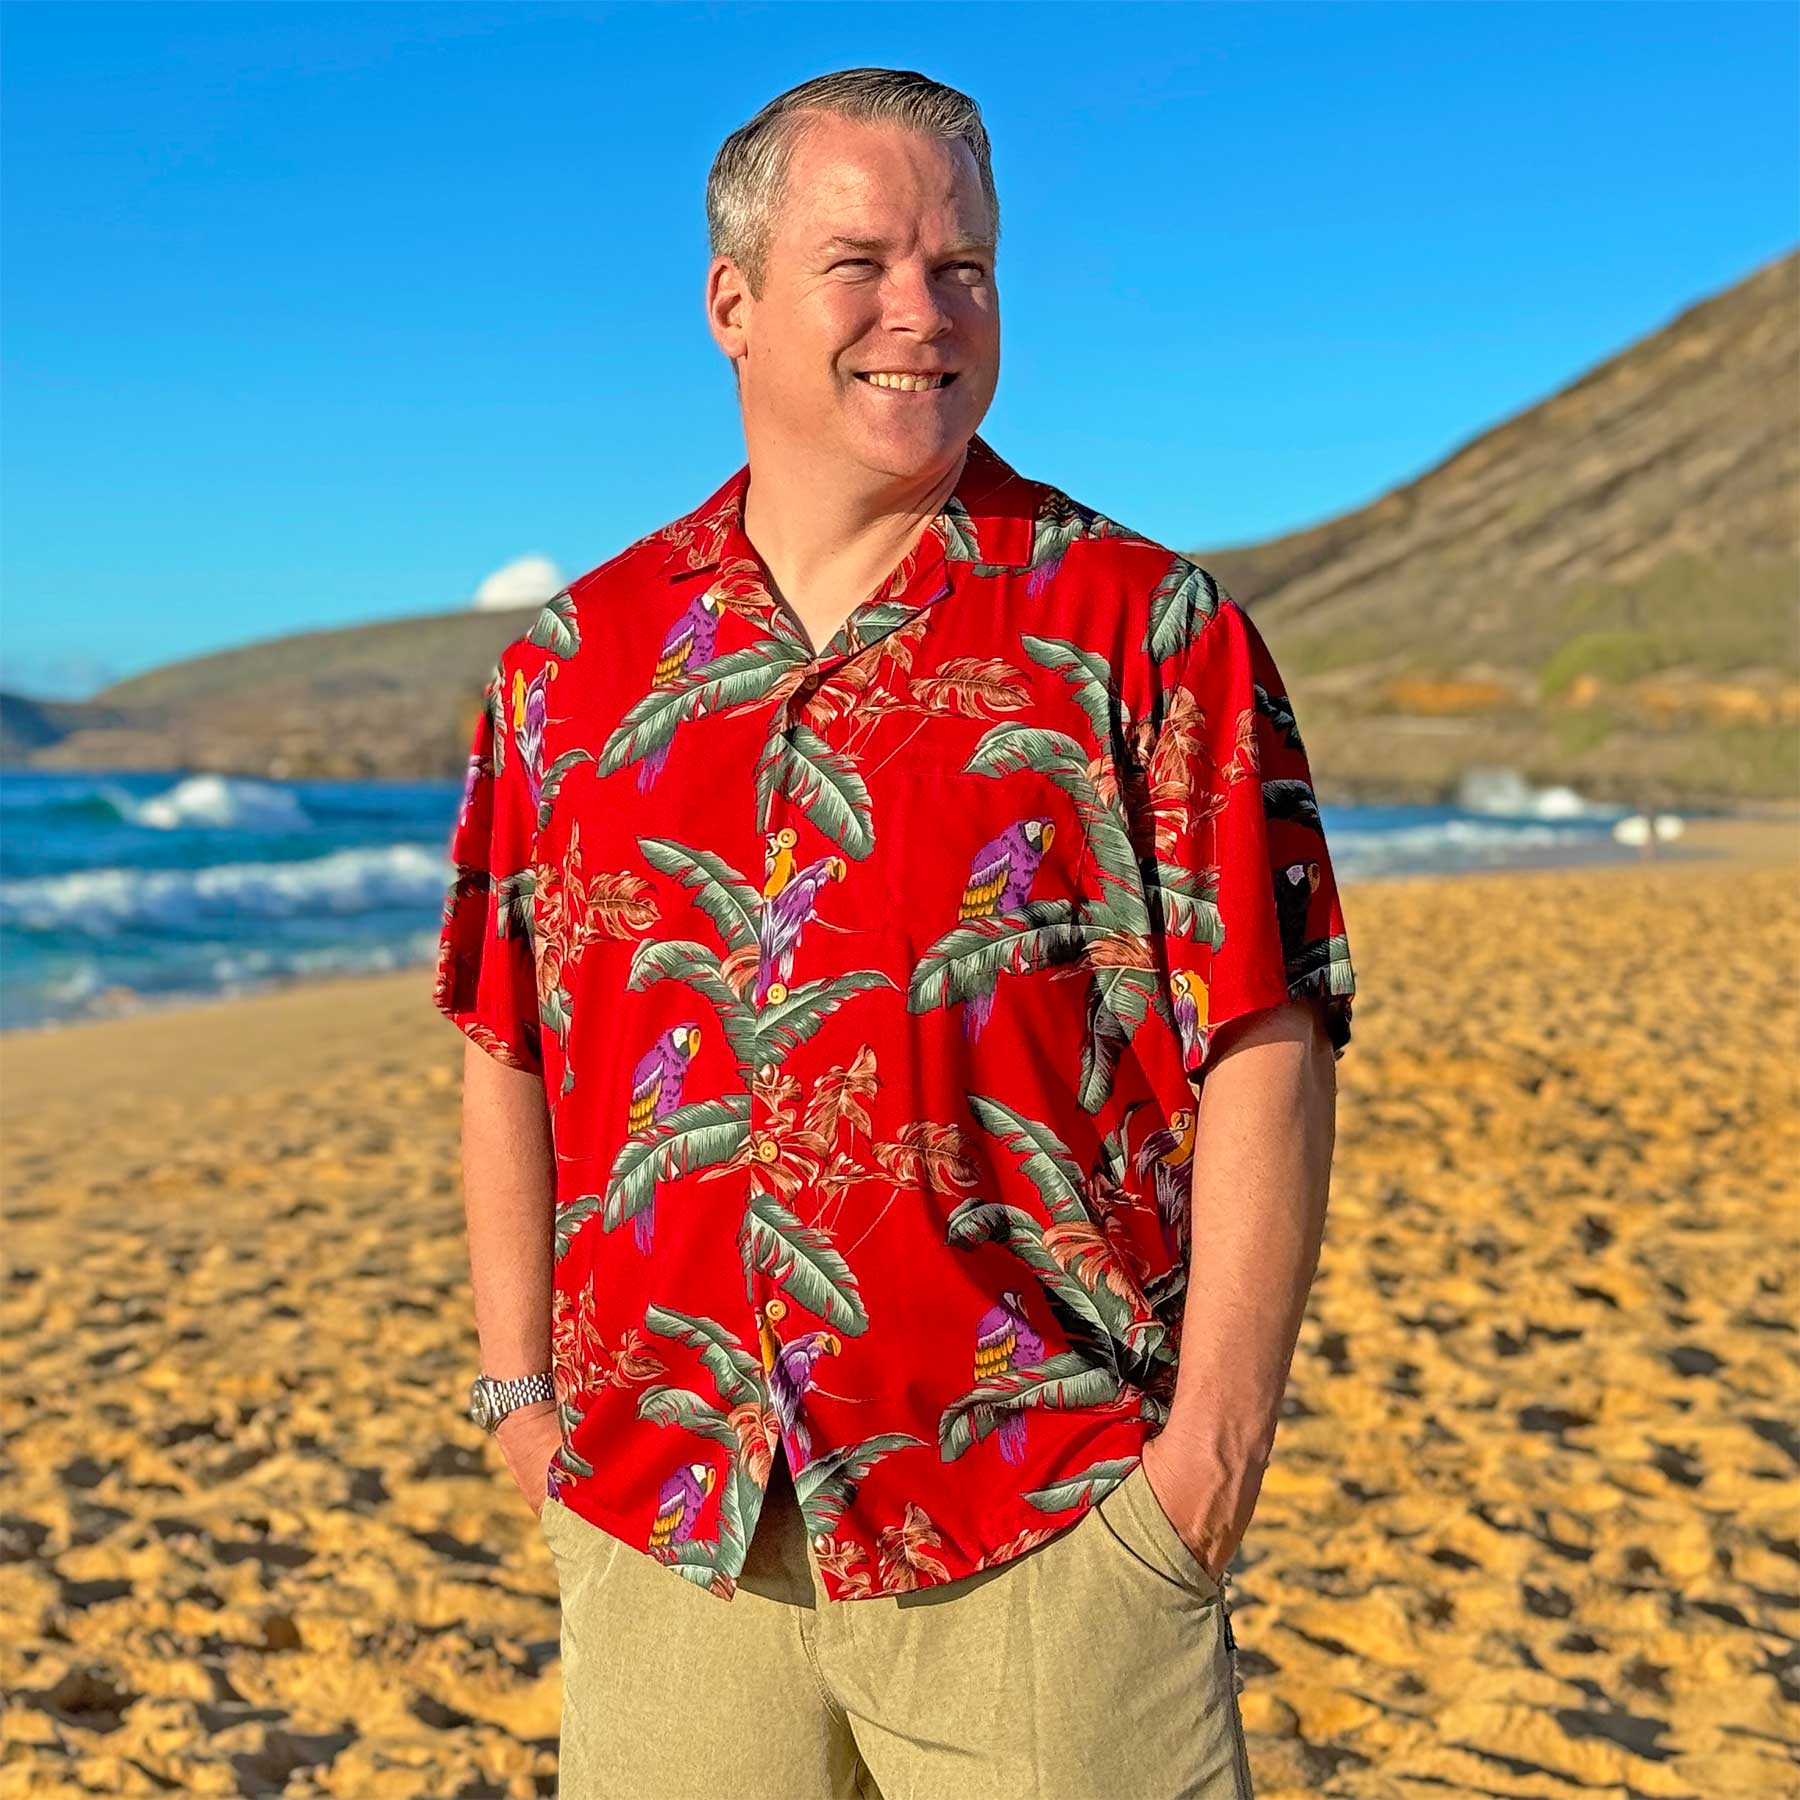 Aloha Spotter's guide to aloha shirts · Aloha Spotter